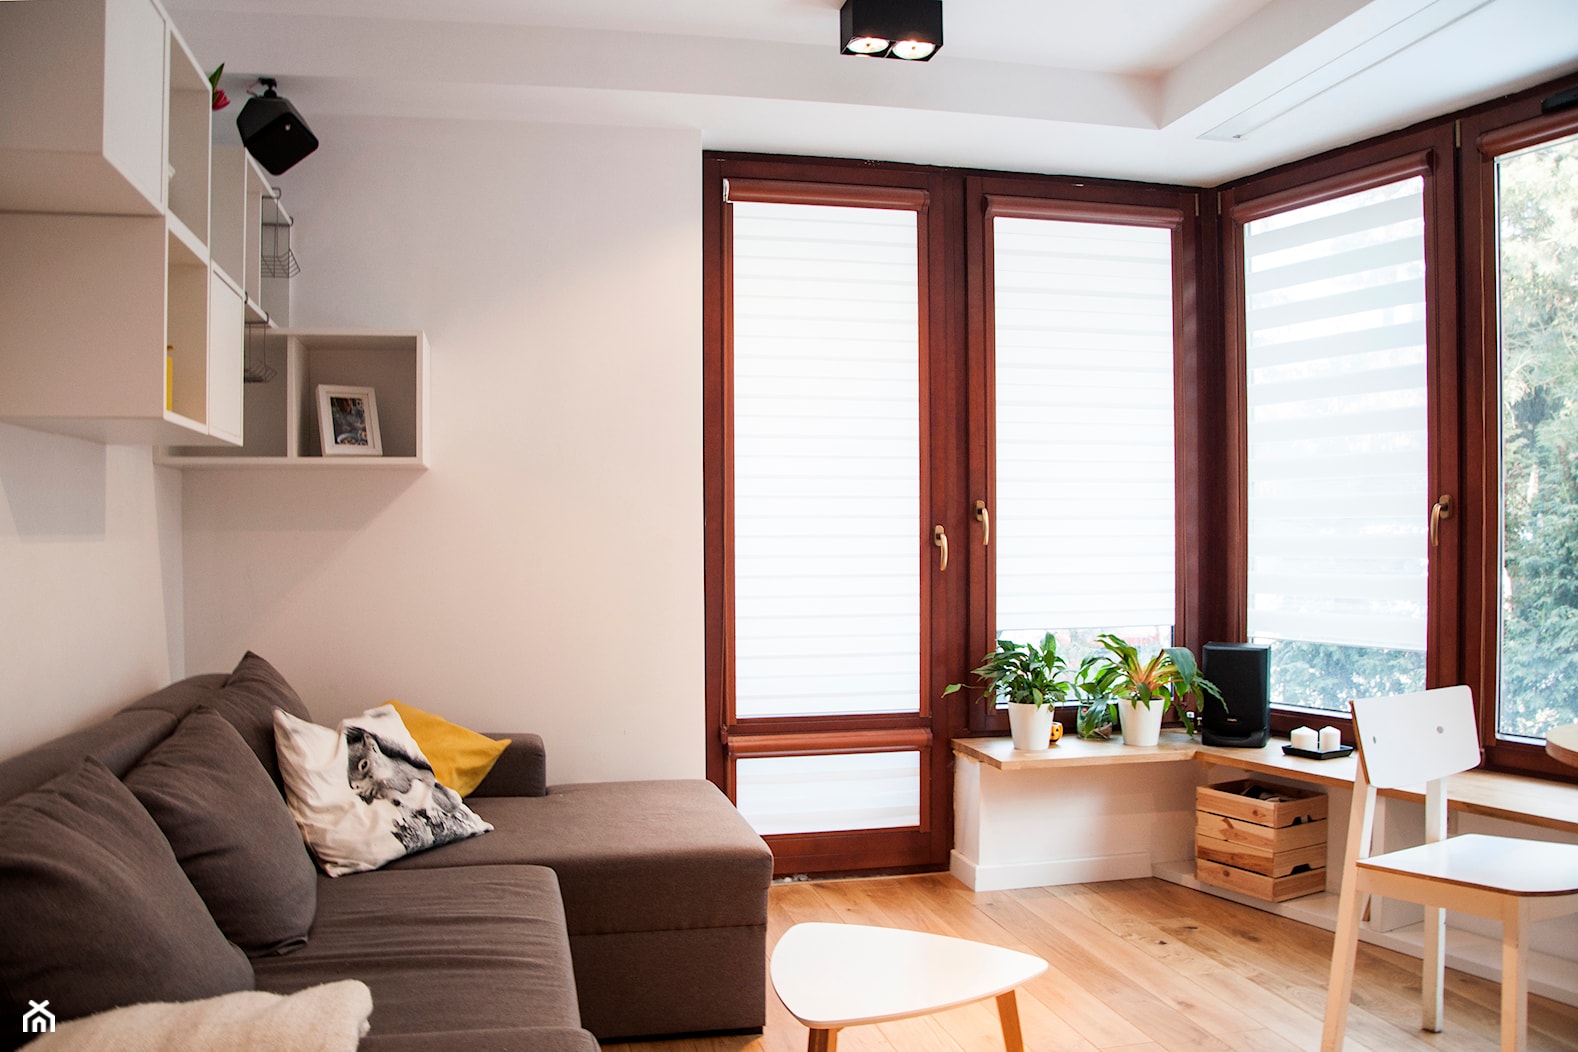 Niewielkie mieszkanie w skandynawskim stylu - Salon, styl skandynawski - zdjęcie od MIKU grafika & wnętrza - Homebook